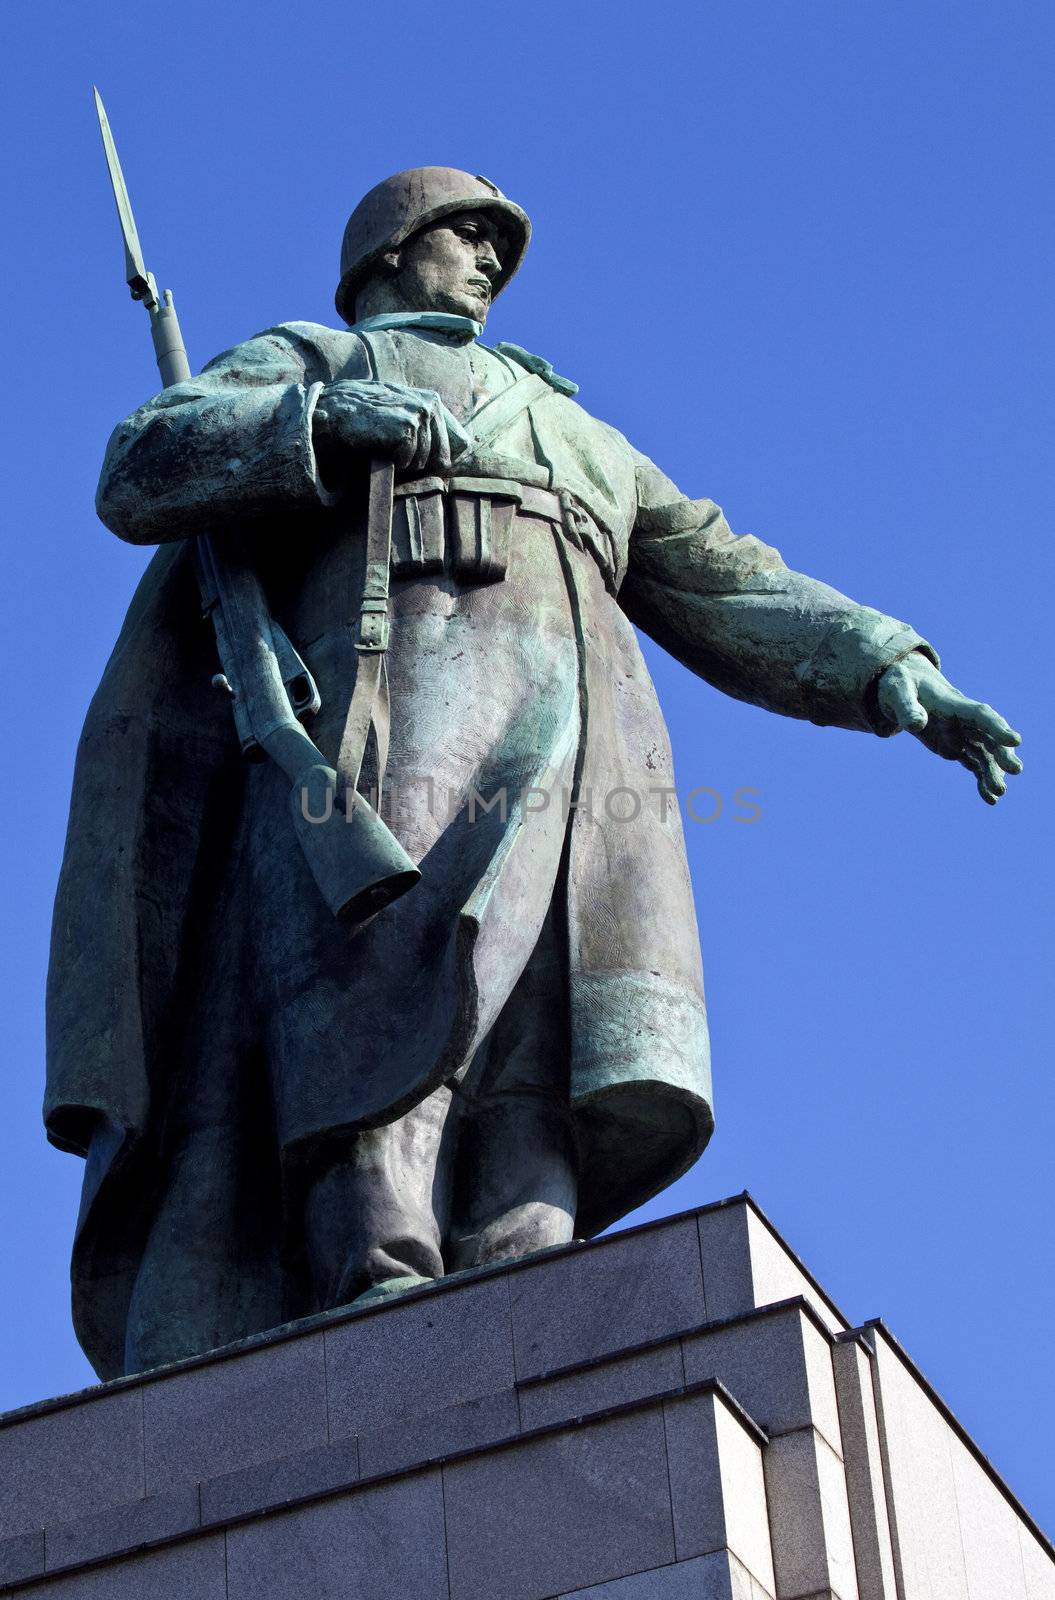 Statue at the Soviet/Russian War Memorial in Berlin's Tiergarten.